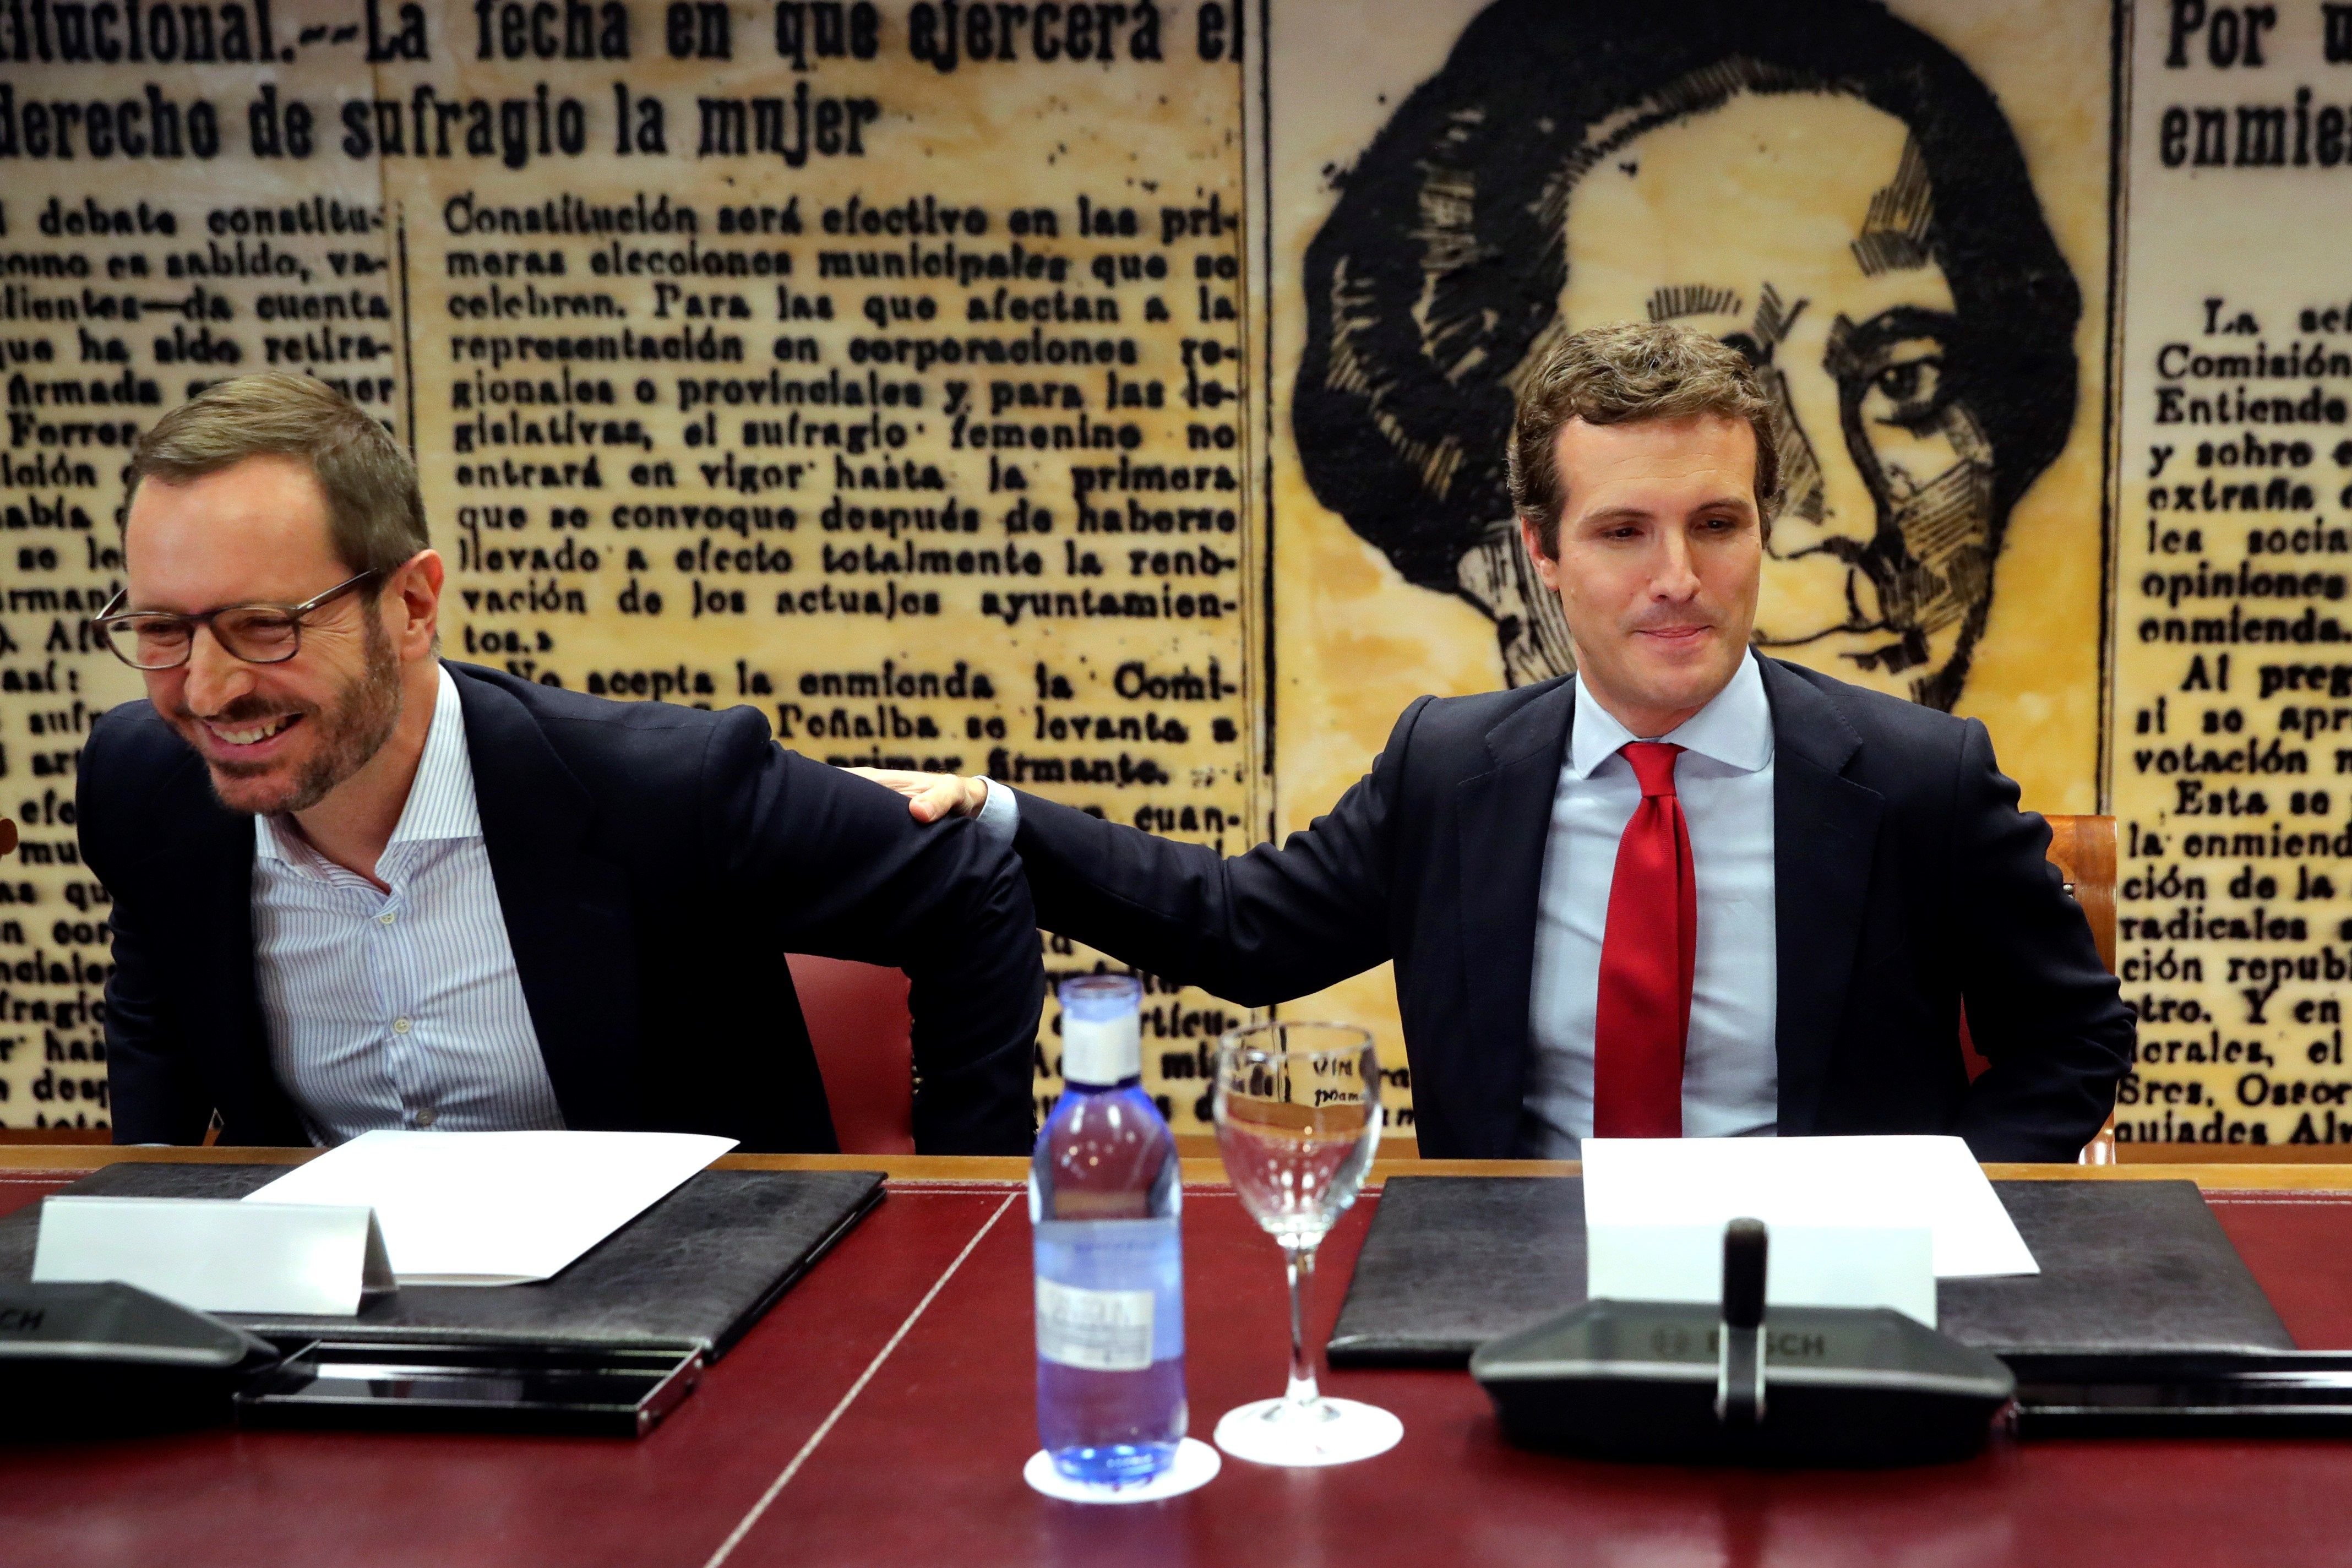 Mofes amb "l'exili" segovià de Javier Maroto per ser portaveu del PP al Senat